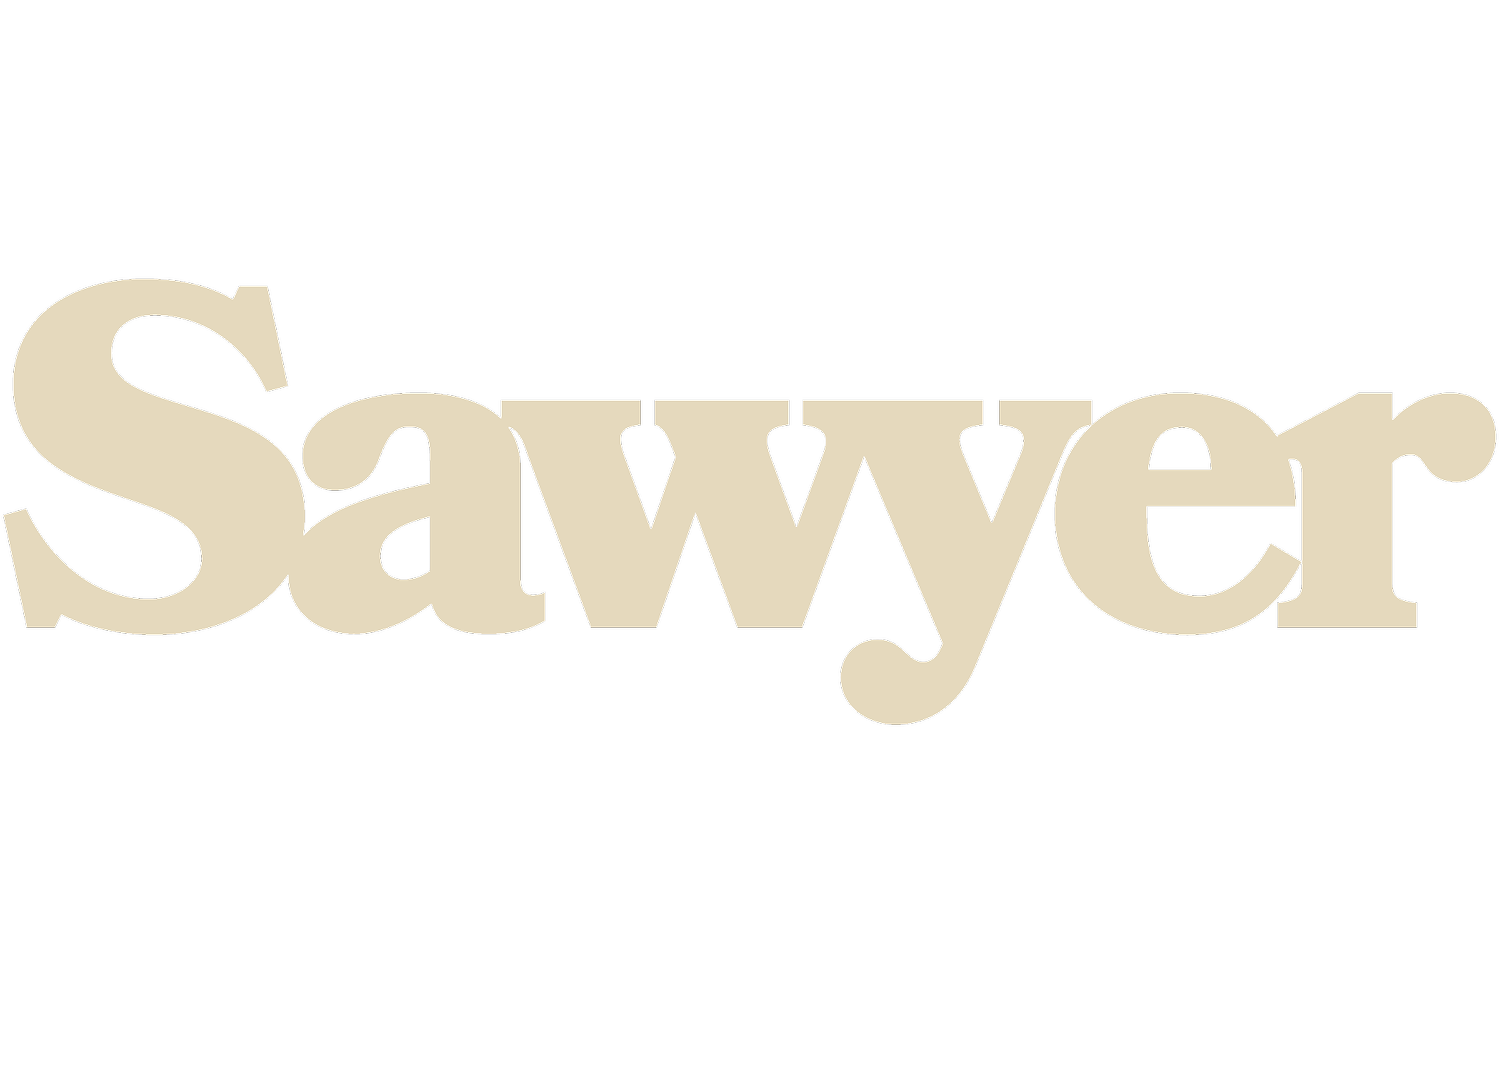 SAWYER